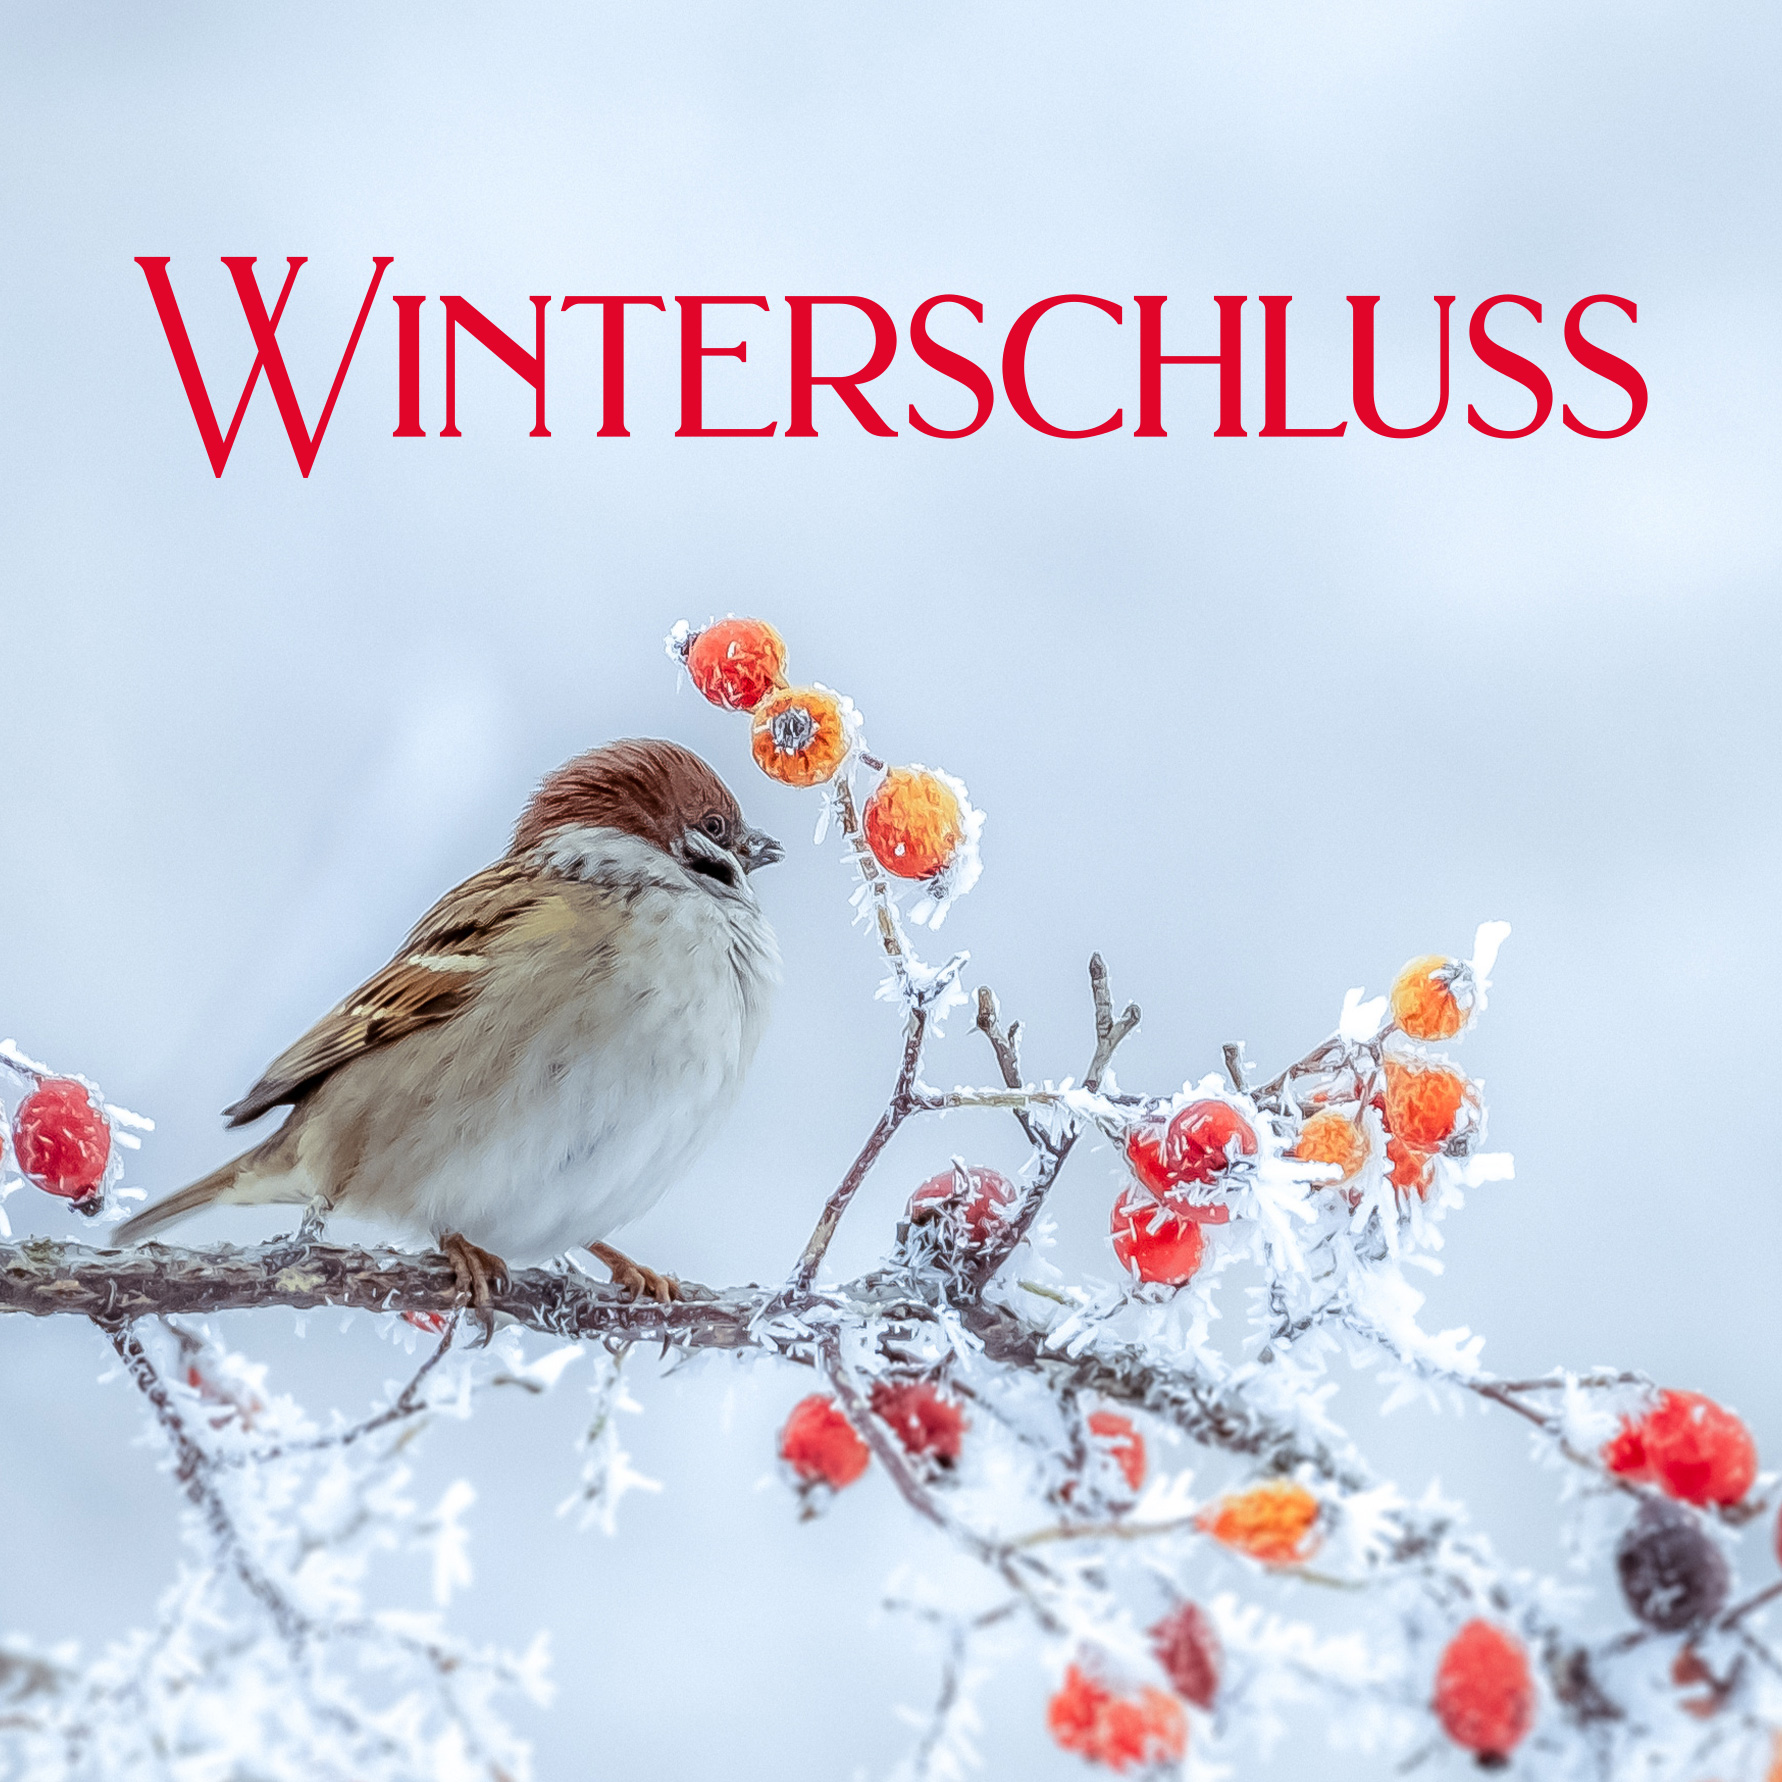 Winterschluss in Erding, Wasserburg, Dorfen und Freising